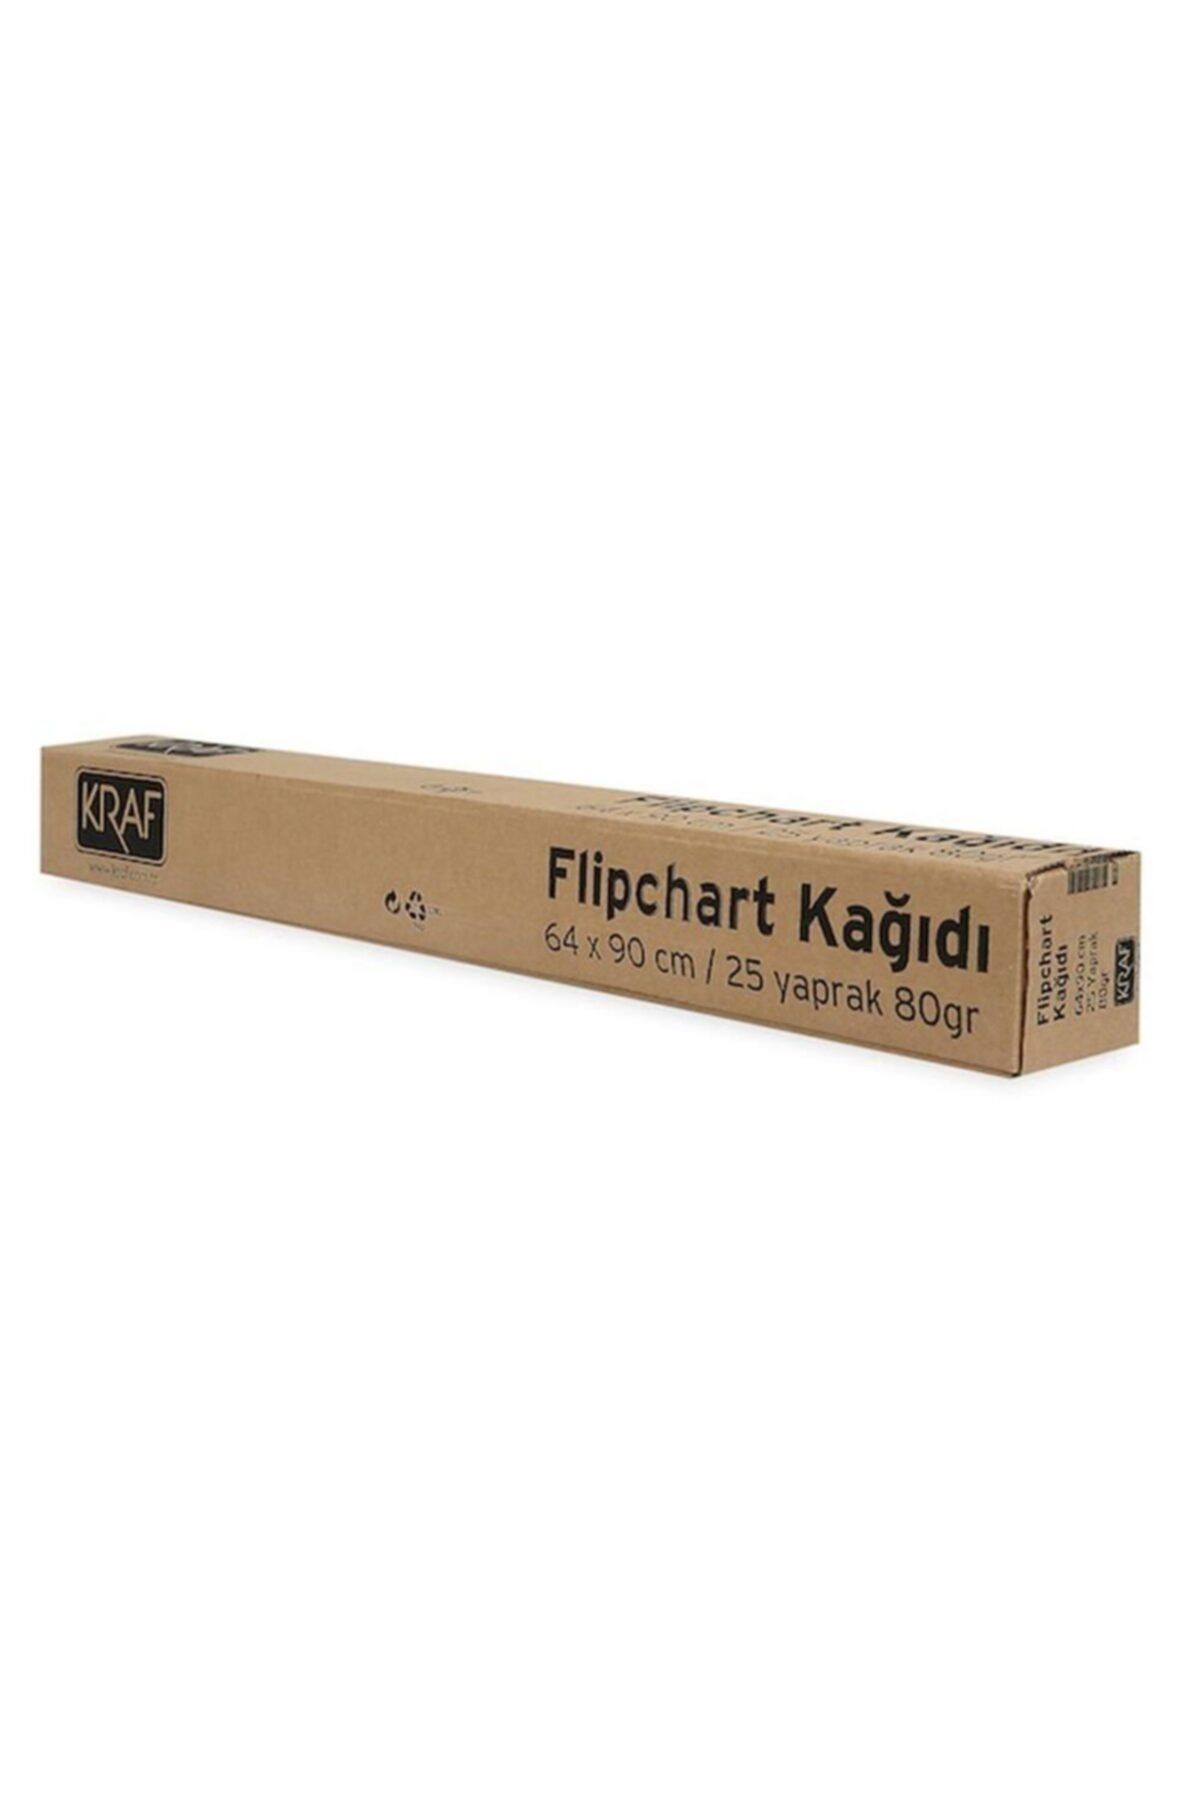 KRAF Flipchart Kağıdı Rulo 64x90 Cm 25 Yp